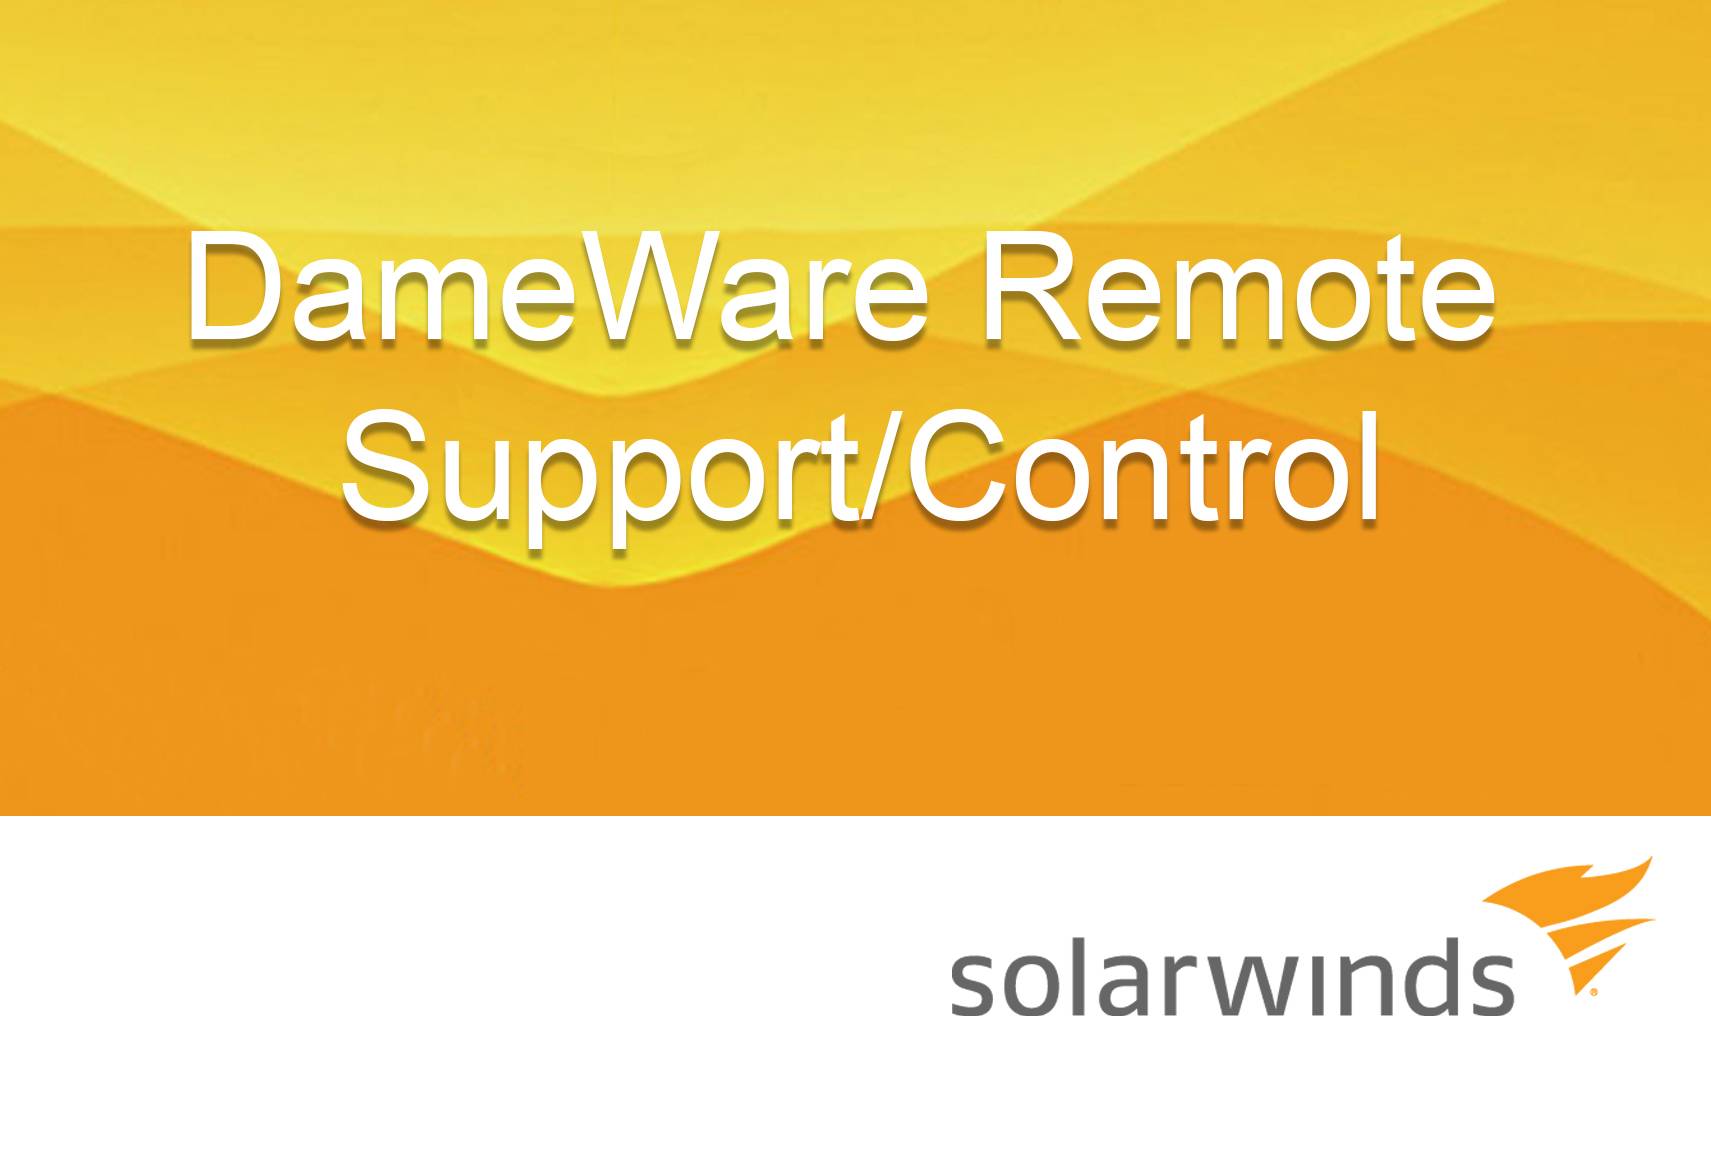 solarwinds dameware mini remote control per technician license